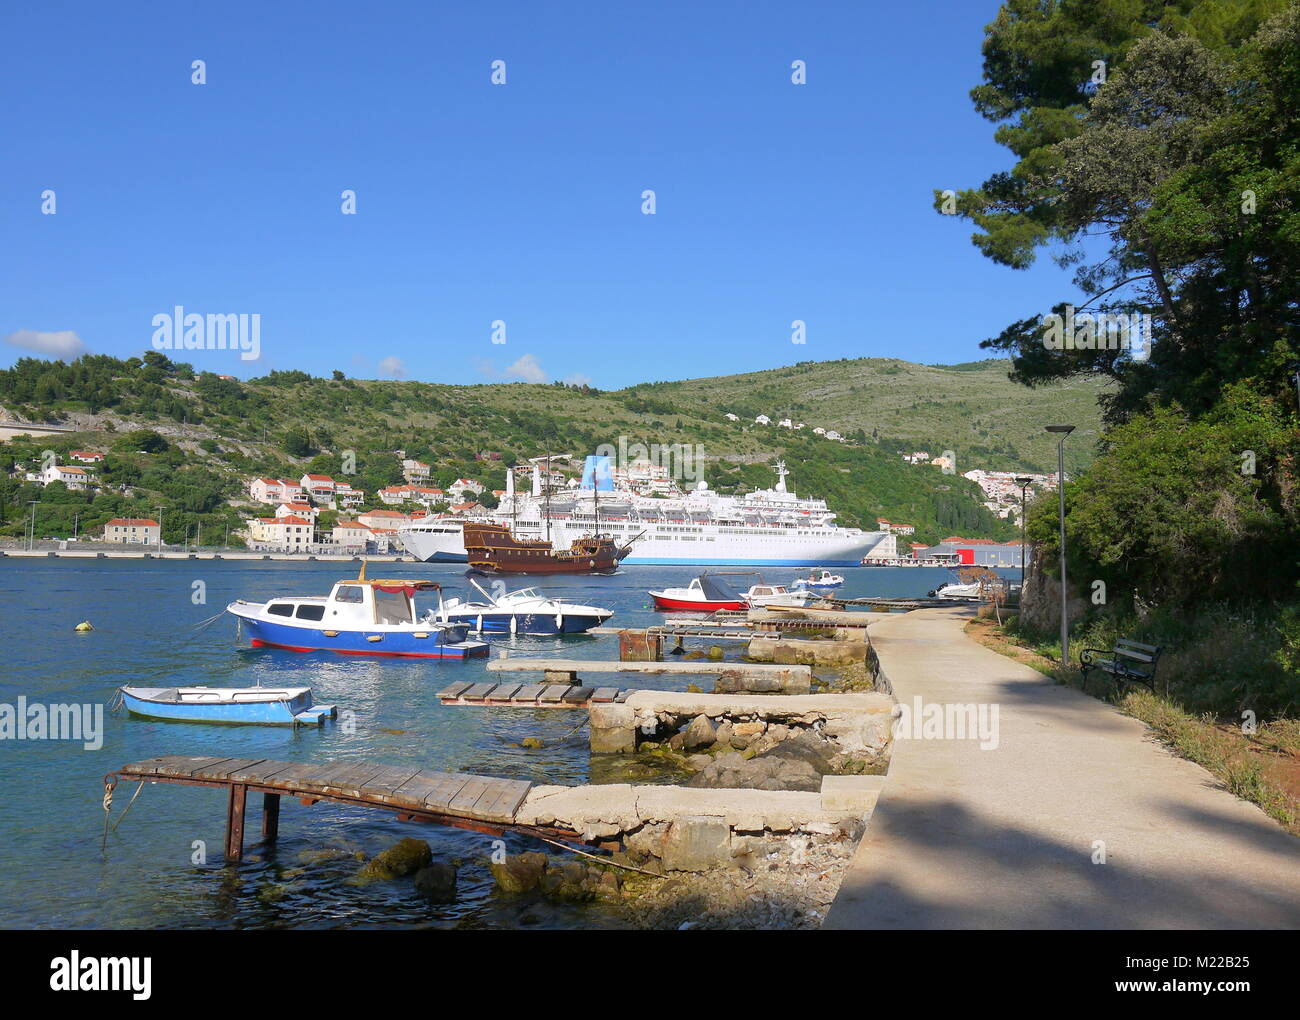 Adria idyllische Landschaft mit Blick auf die riesigen Kreuzfahrtschiffe, Schiffe, Boote, Berge und das klare, türkisfarbene Wasser am Hafen von berühmten küstenstadt Dubrovnik, M Stockfoto